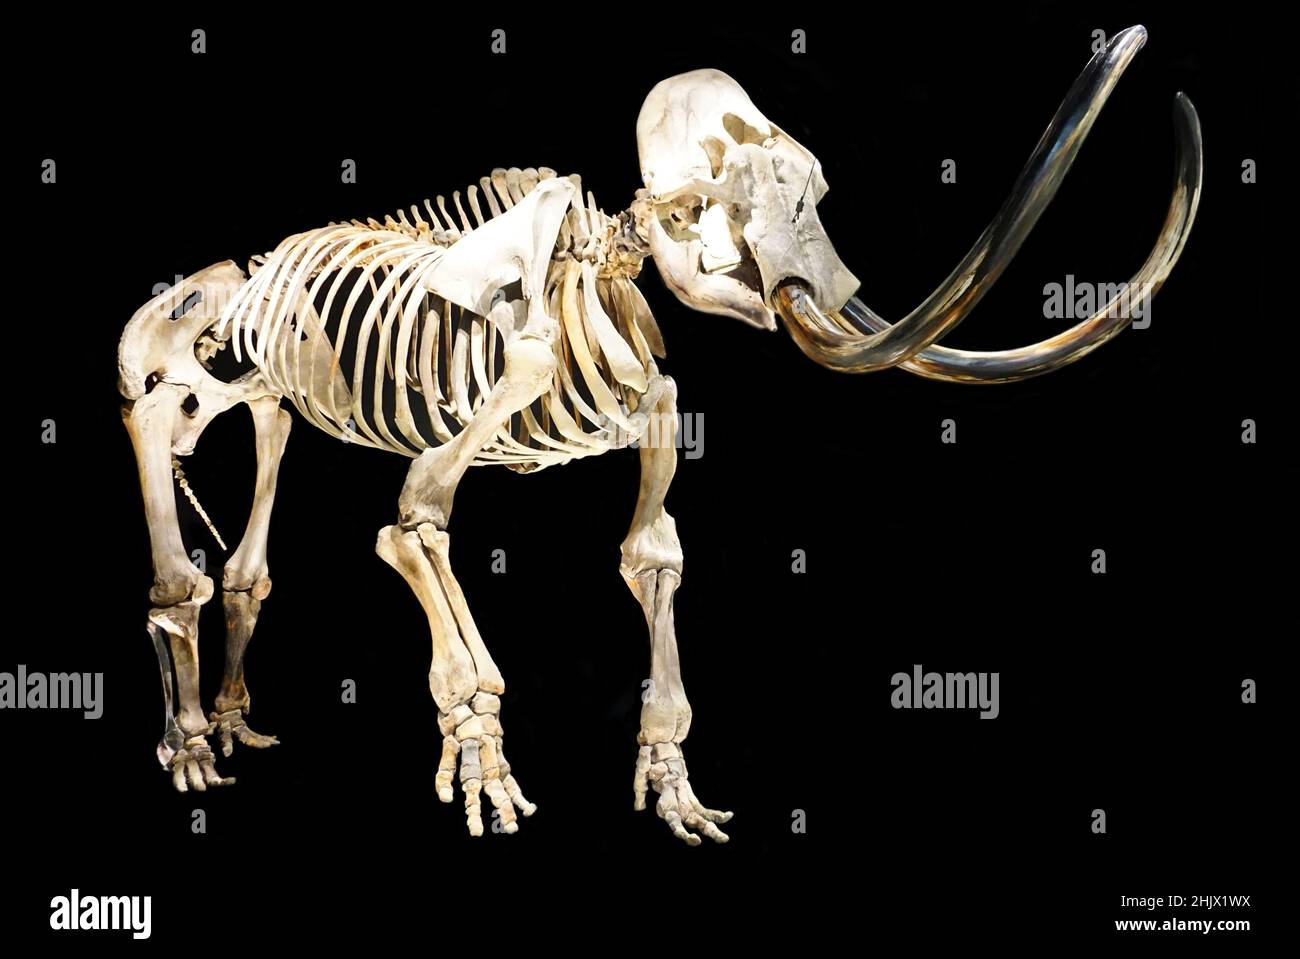 Scheletro di un mammut lanoso di toro, Mammuthus primigenius, una specie di mammut che visse durante il Pleistocene fino alla sua estinzione nell'epoca dell'Olocene. Dimensioni reali. Foto Stock